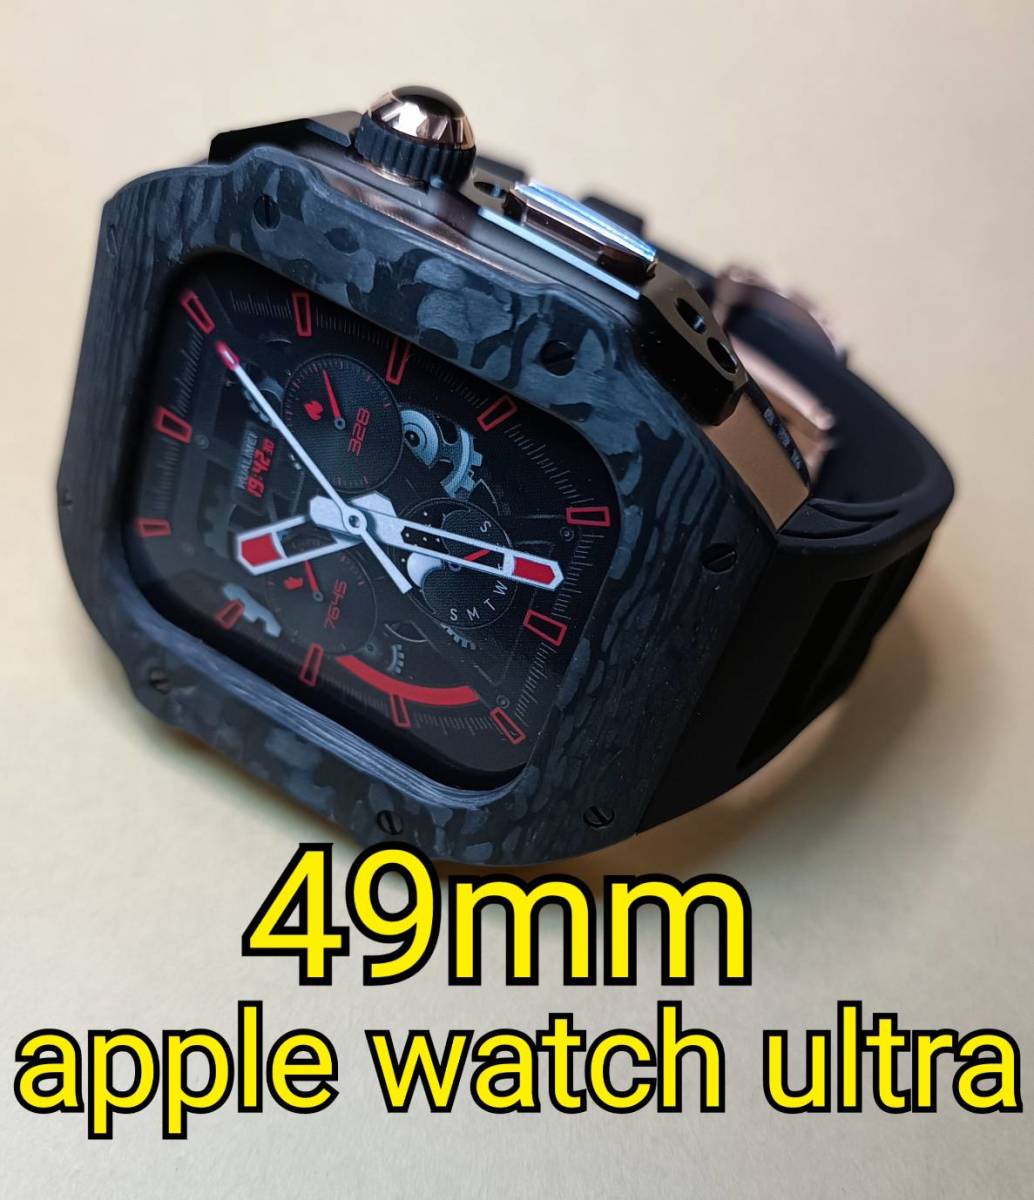 カーボンRG 49mm apple watch ultra アップルウォッチウルトラ メタル ケース ステンレス カスタム golden concept ゴールデンコンセプト_画像1